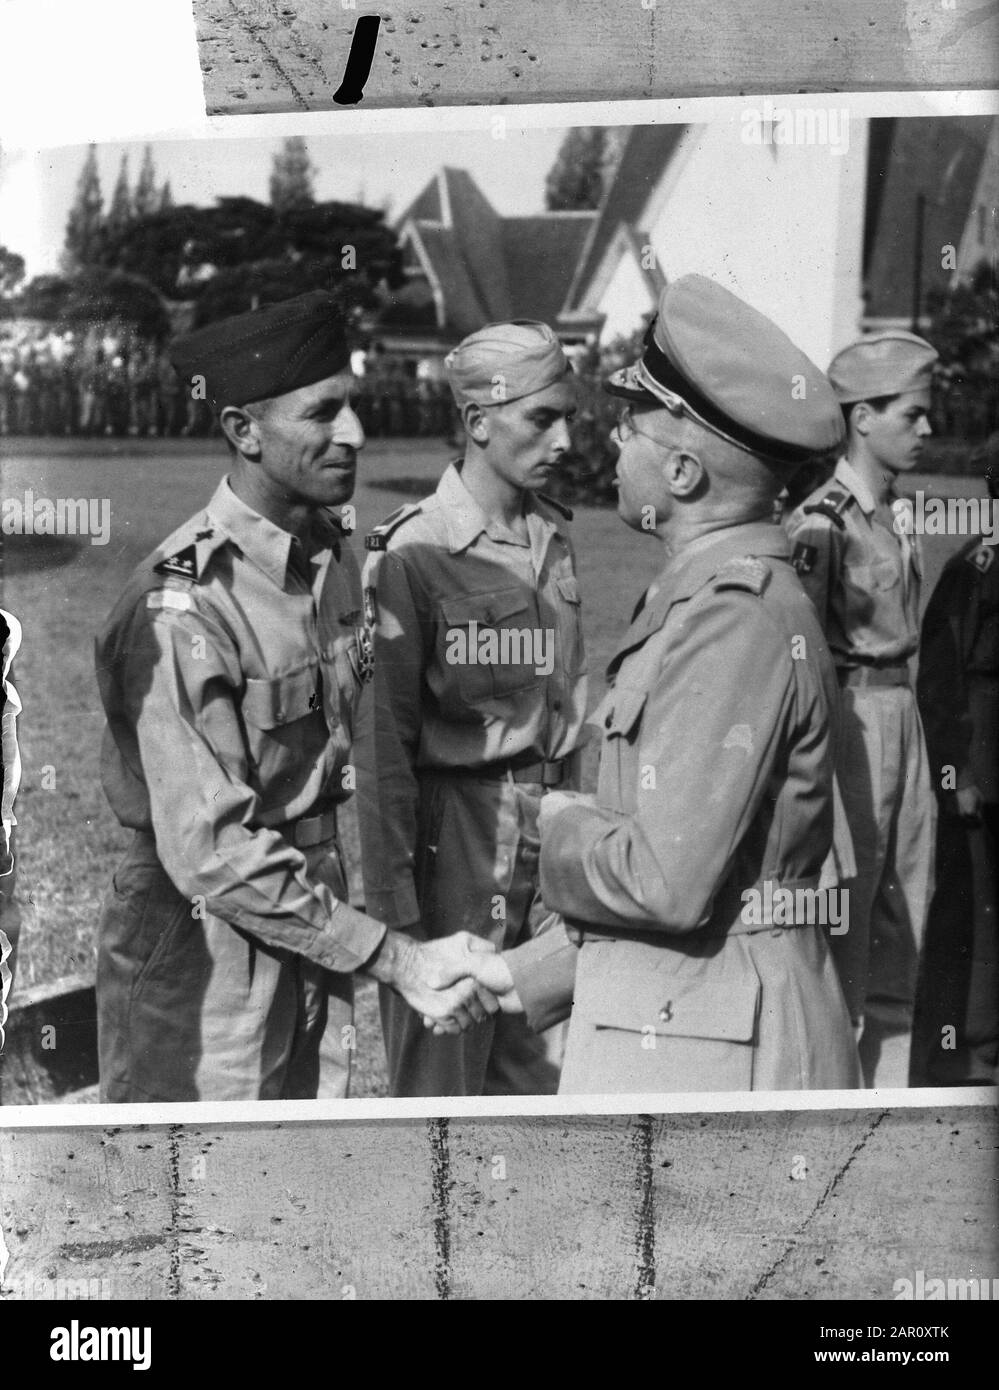 Auf dem Bürgermeisterplatz in Batavia, Vertreter der Krone in Indonesien, Dr. L.J.M. Beel, besitzt die Dekorationen, die zur 4. Klasse des Rittergutes des Militär-Orden von William gehören, die an fünf Mitglieder der KNIL und zwei der Königlichen Armee verliehen werden. Er schüttelt die Hand des dekorierten Oberstleutnant-Piloten-Beobachters R.E. Jesserun Anmerkung: Die Anordnung von William wurde auf der K.B vom 16. November 1948 Nr. 13 erteilt. Jessurun kam am 14. Mai 1949 in Kroja (Java) am 19. März 1949 in einen Flugzeugabsturz: Standort: Batavia, Indonesien, Jakarta, Niederländisch-Ostindien Personenname: Beel, L.J.M., Jesserun, Stockfoto